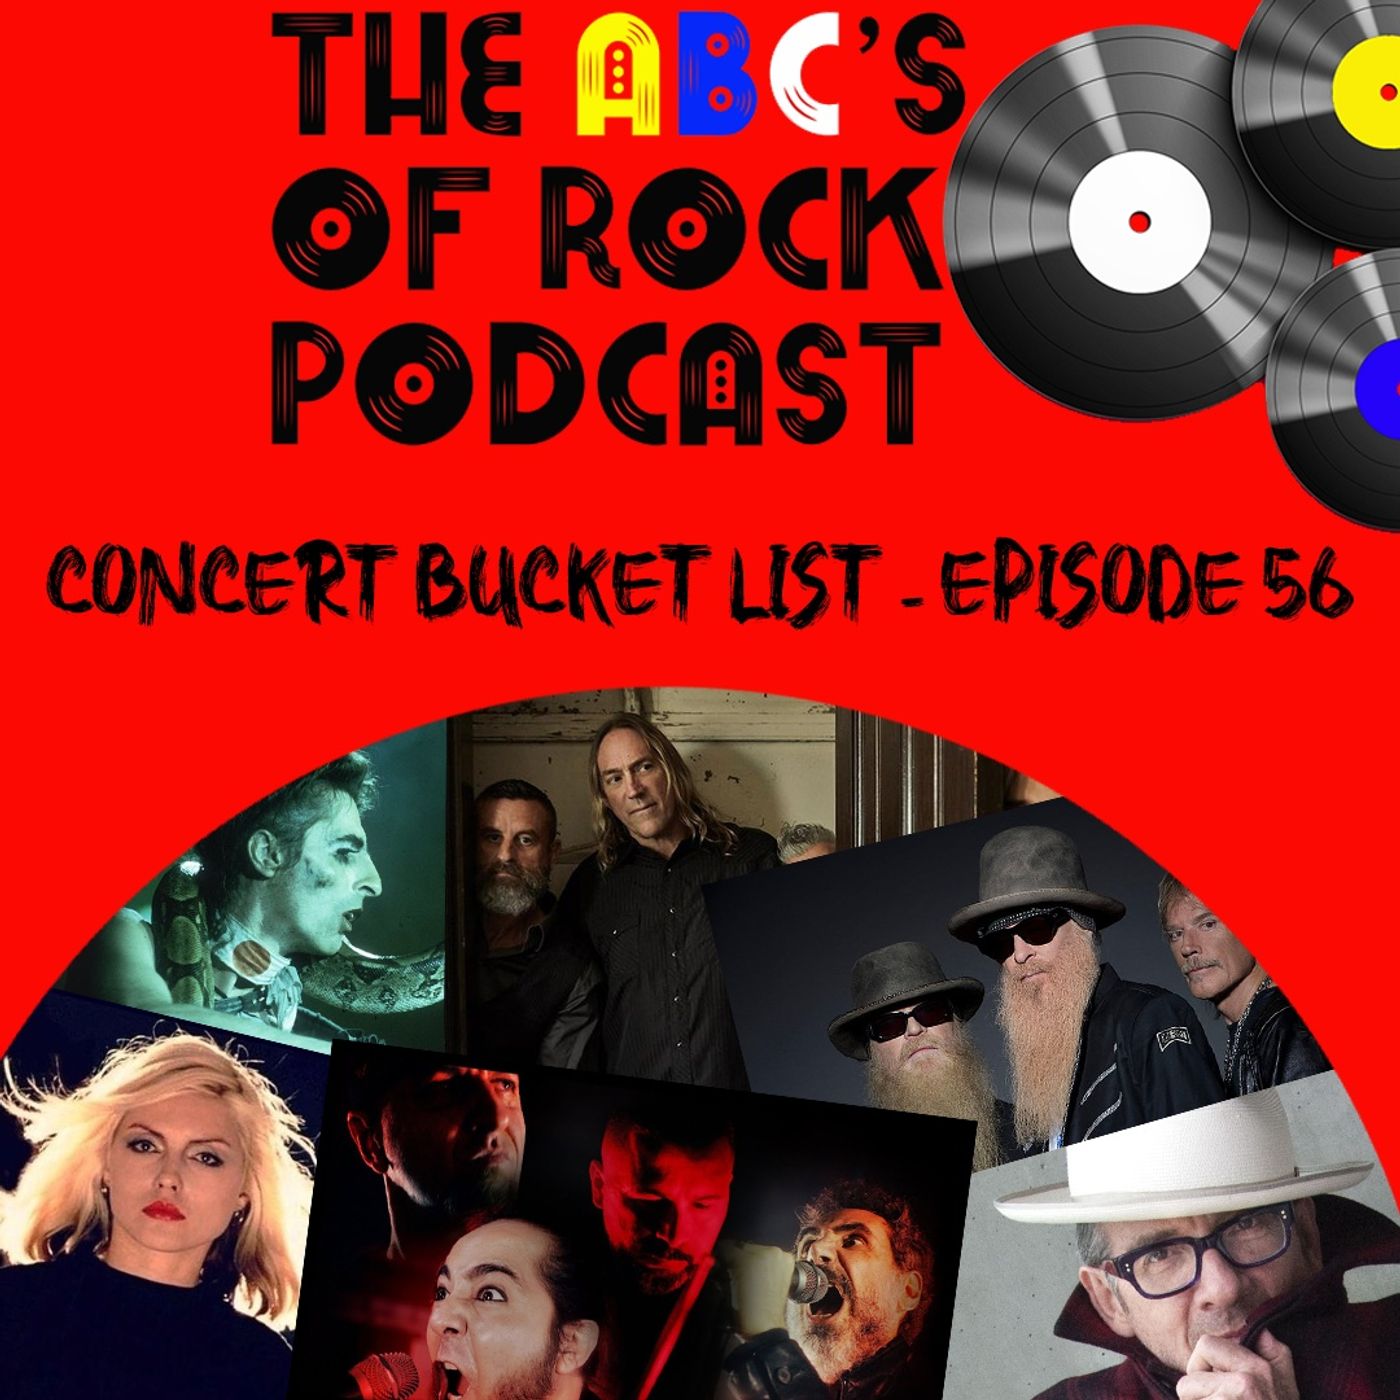 Concert Bucket List -  Episode 56